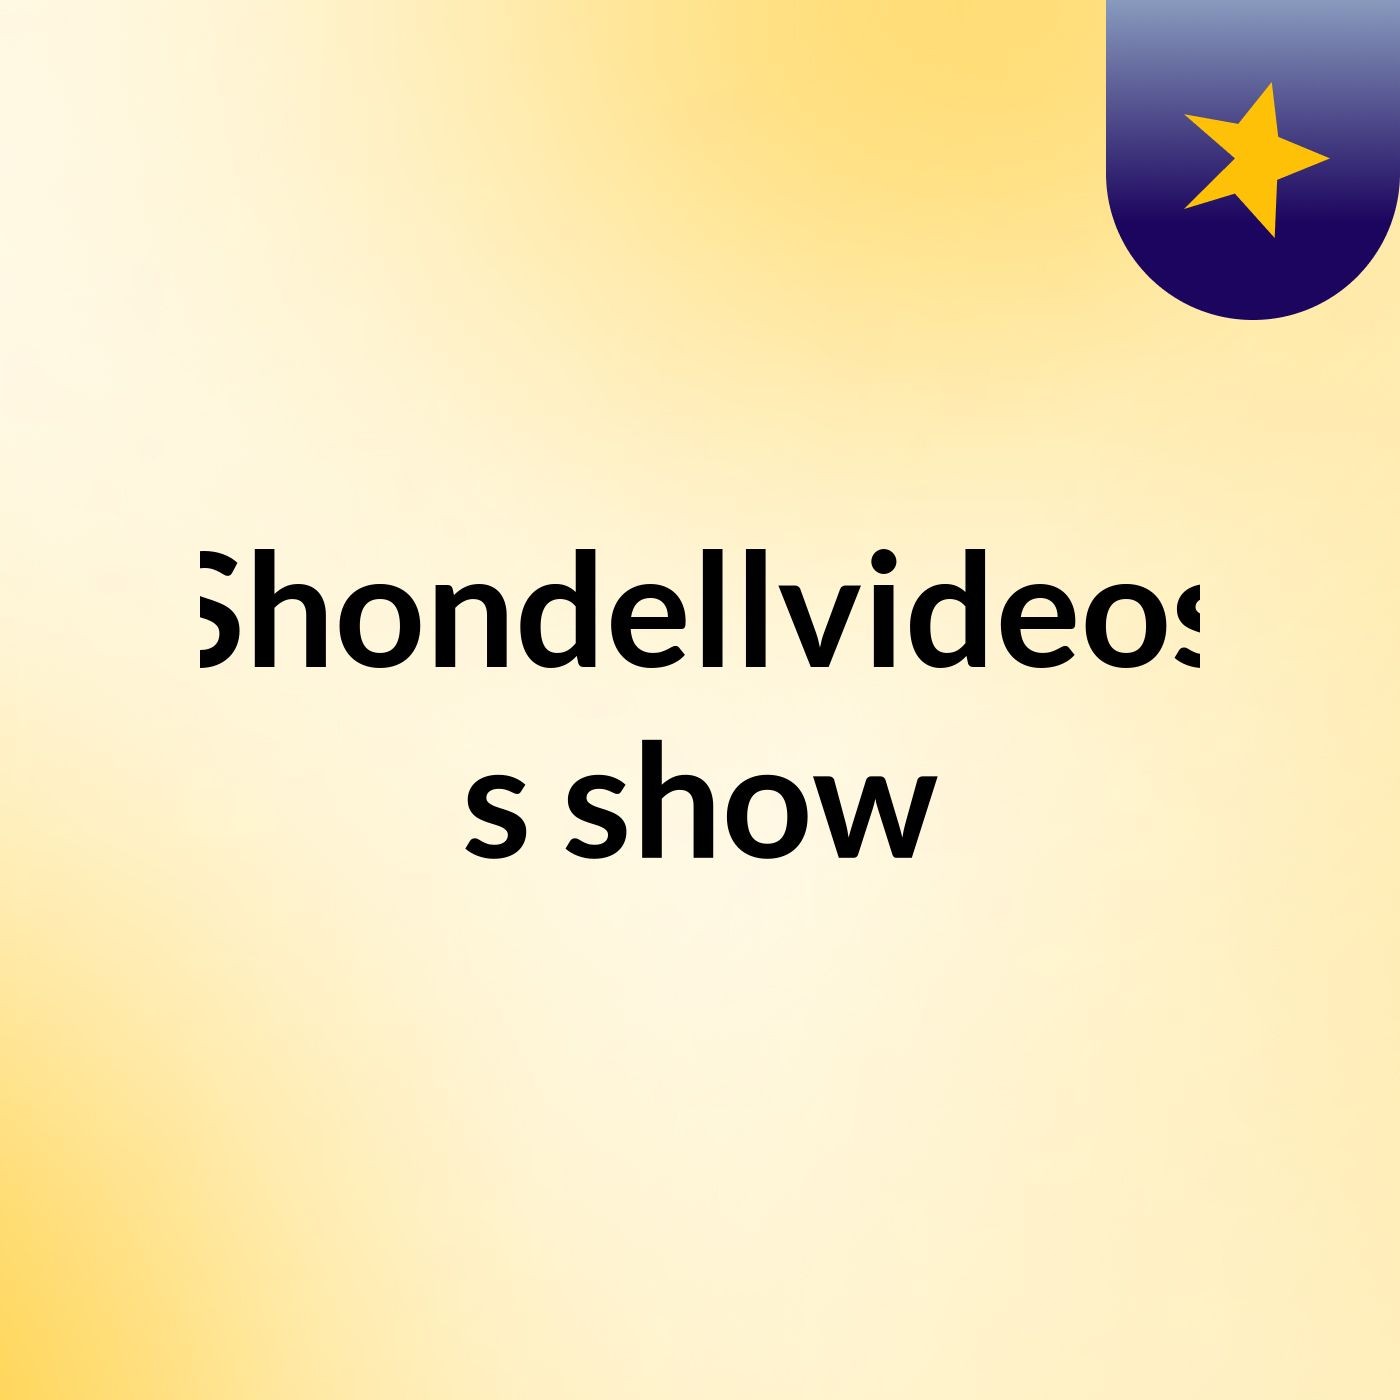 Episode 3 - Shondellvideos's show